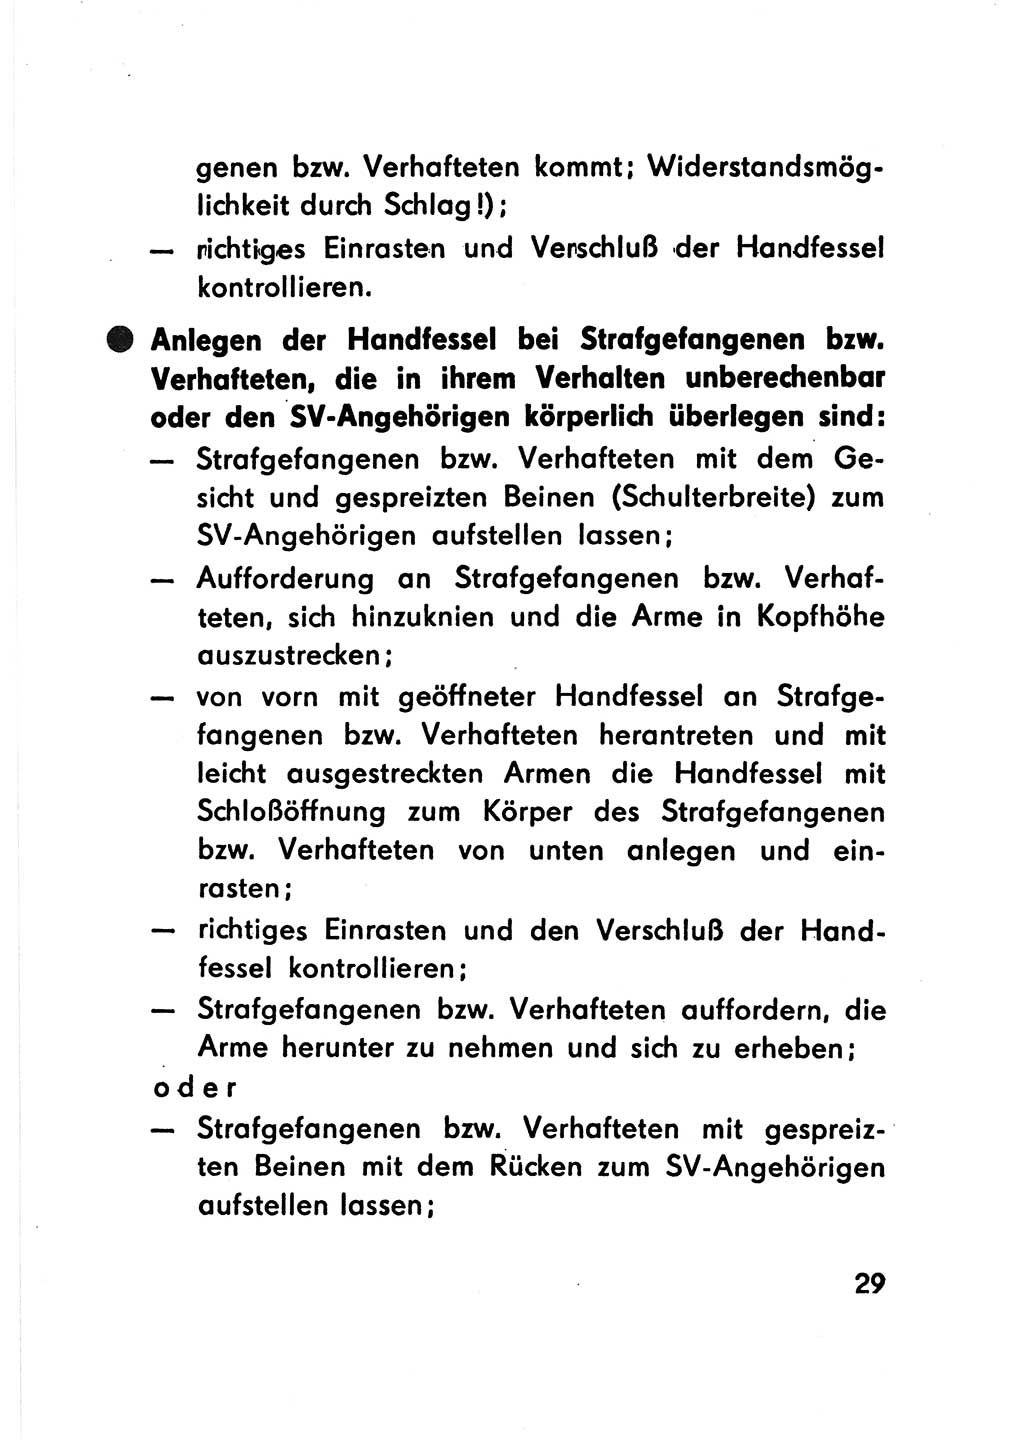 Merkbuch für SV-Angehörige [Strafvollzug (SV) Deutsche Demokratische Republik (DDR)] 1975, Seite 29 (SV-Angeh. DDR 1975, S. 29)